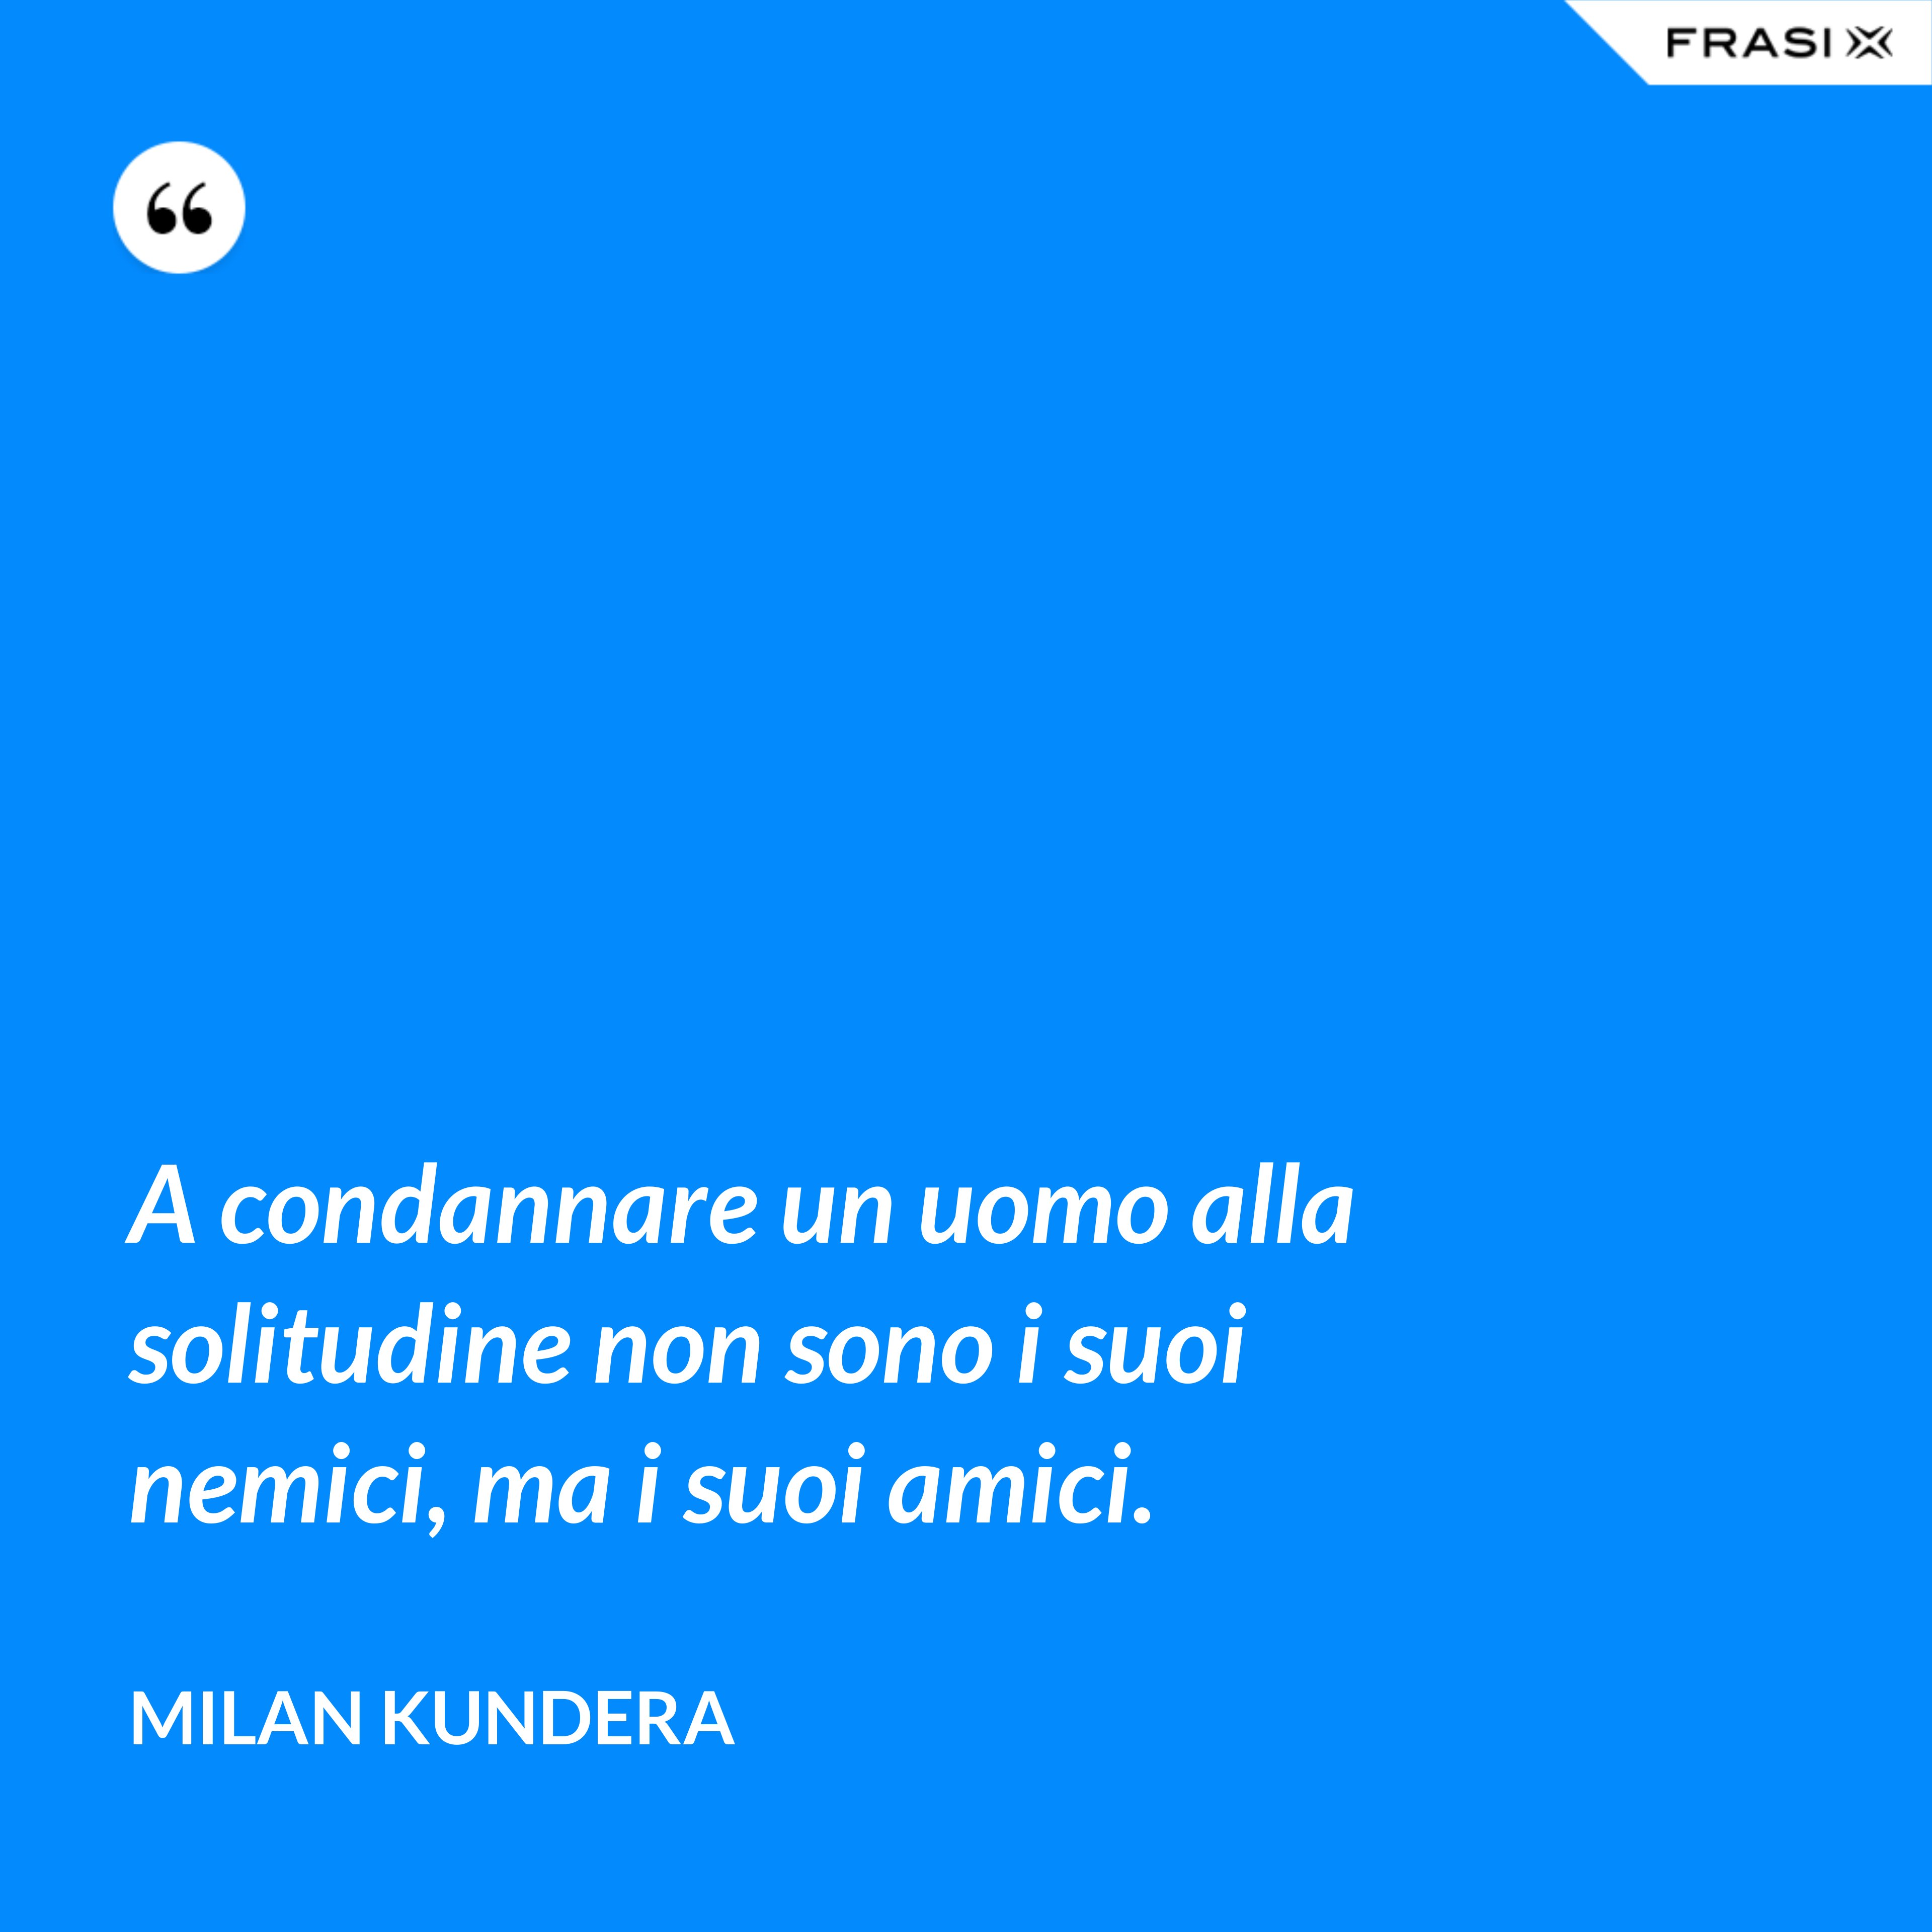 A condannare un uomo alla solitudine non sono i suoi nemici, ma i suoi amici. - Milan Kundera